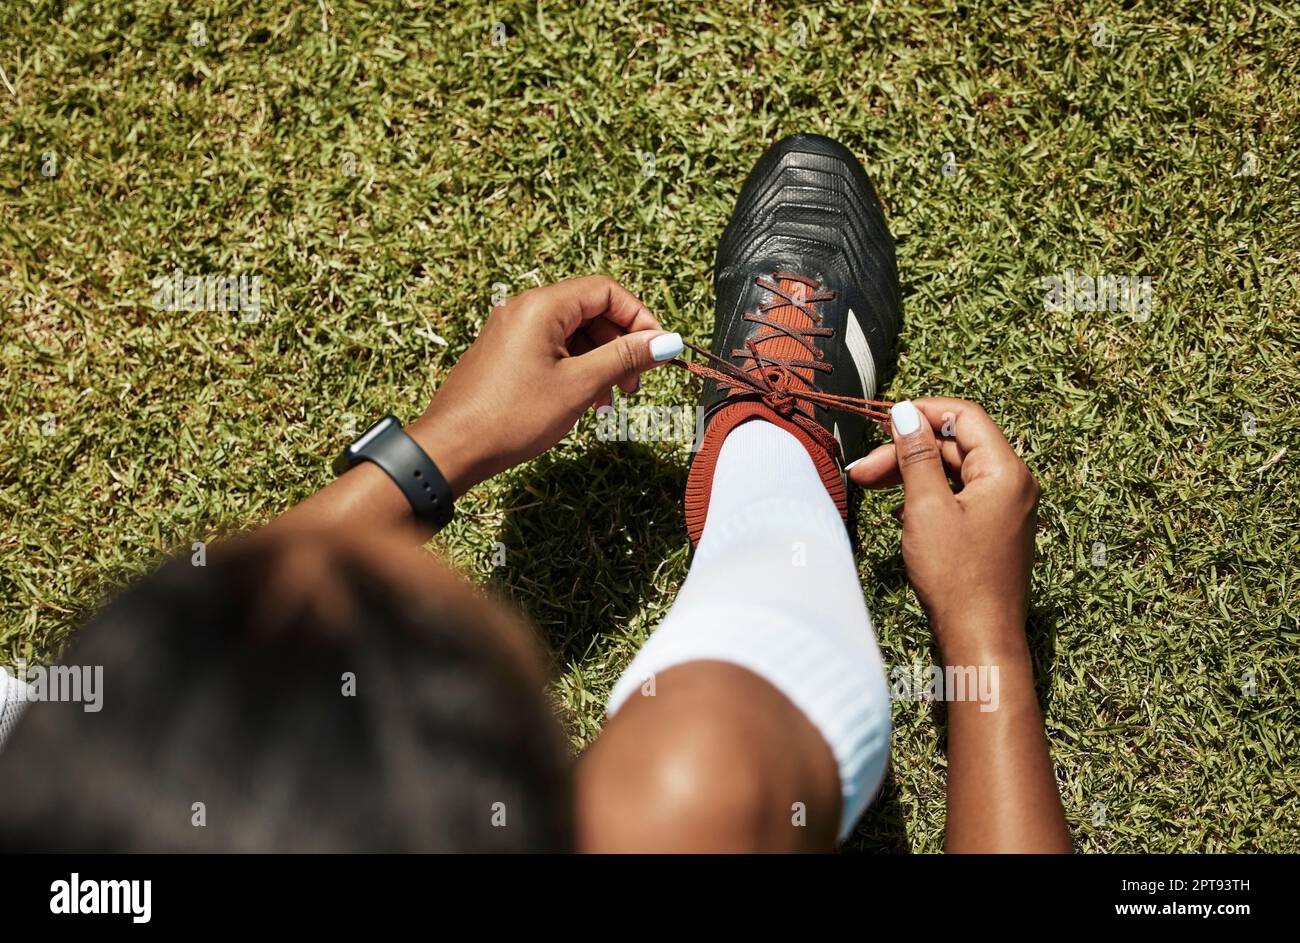 Chaussures cravate, sport et football femme noire athlète sur l'herbe verte  prêt pour l'exercice et l'entraînement. Fitness, entraînement et jeu d'un  joueur en bonne santé Photo Stock - Alamy